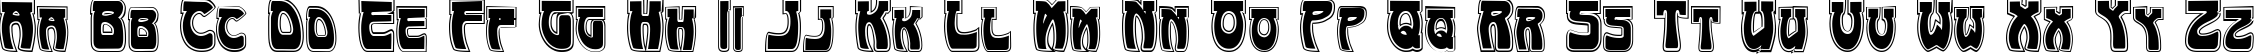 Пример написания английского алфавита шрифтом Art-Nouveau 1895-Contour